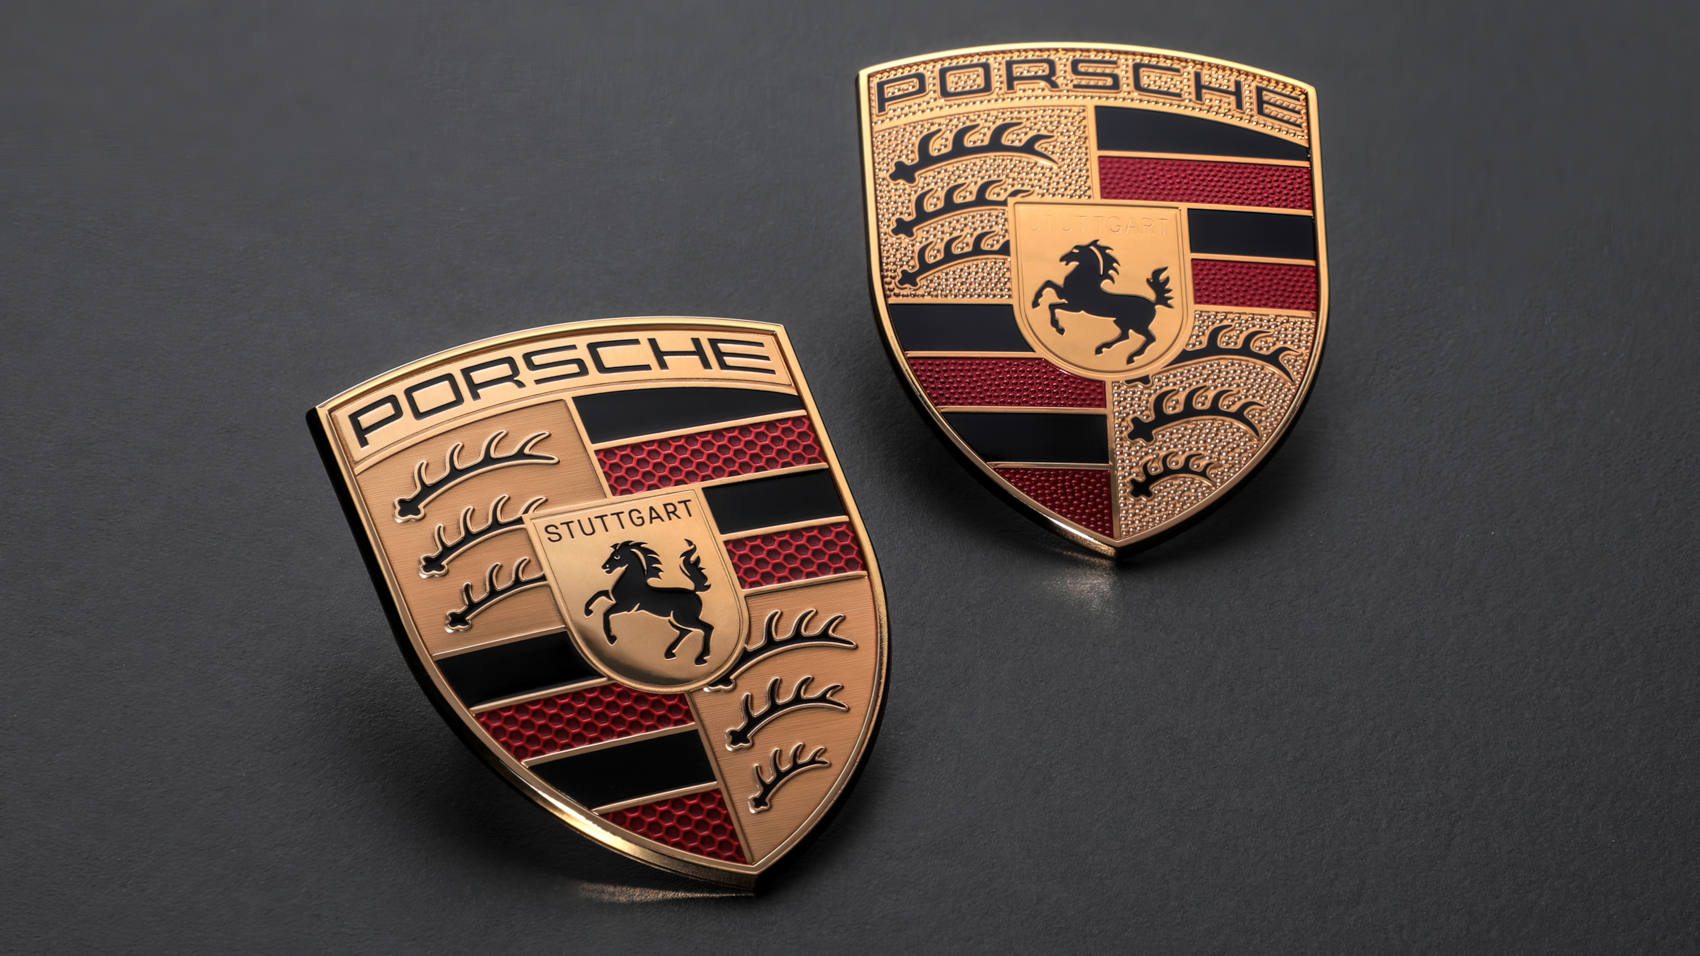 New Porsche crest logo